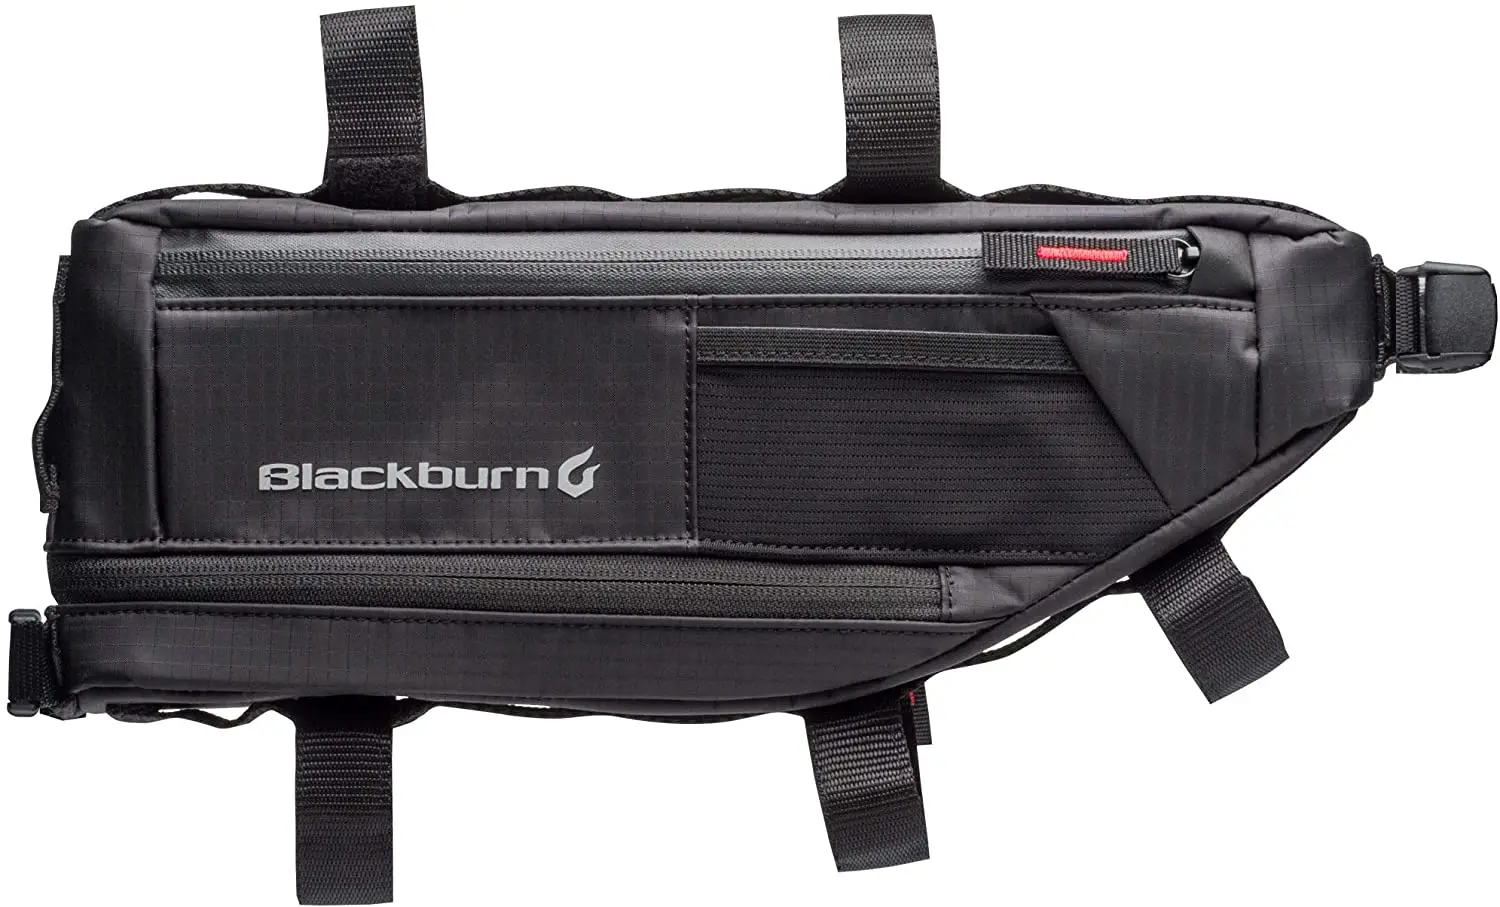 blackburn outpost bike frame bag isolated on white background